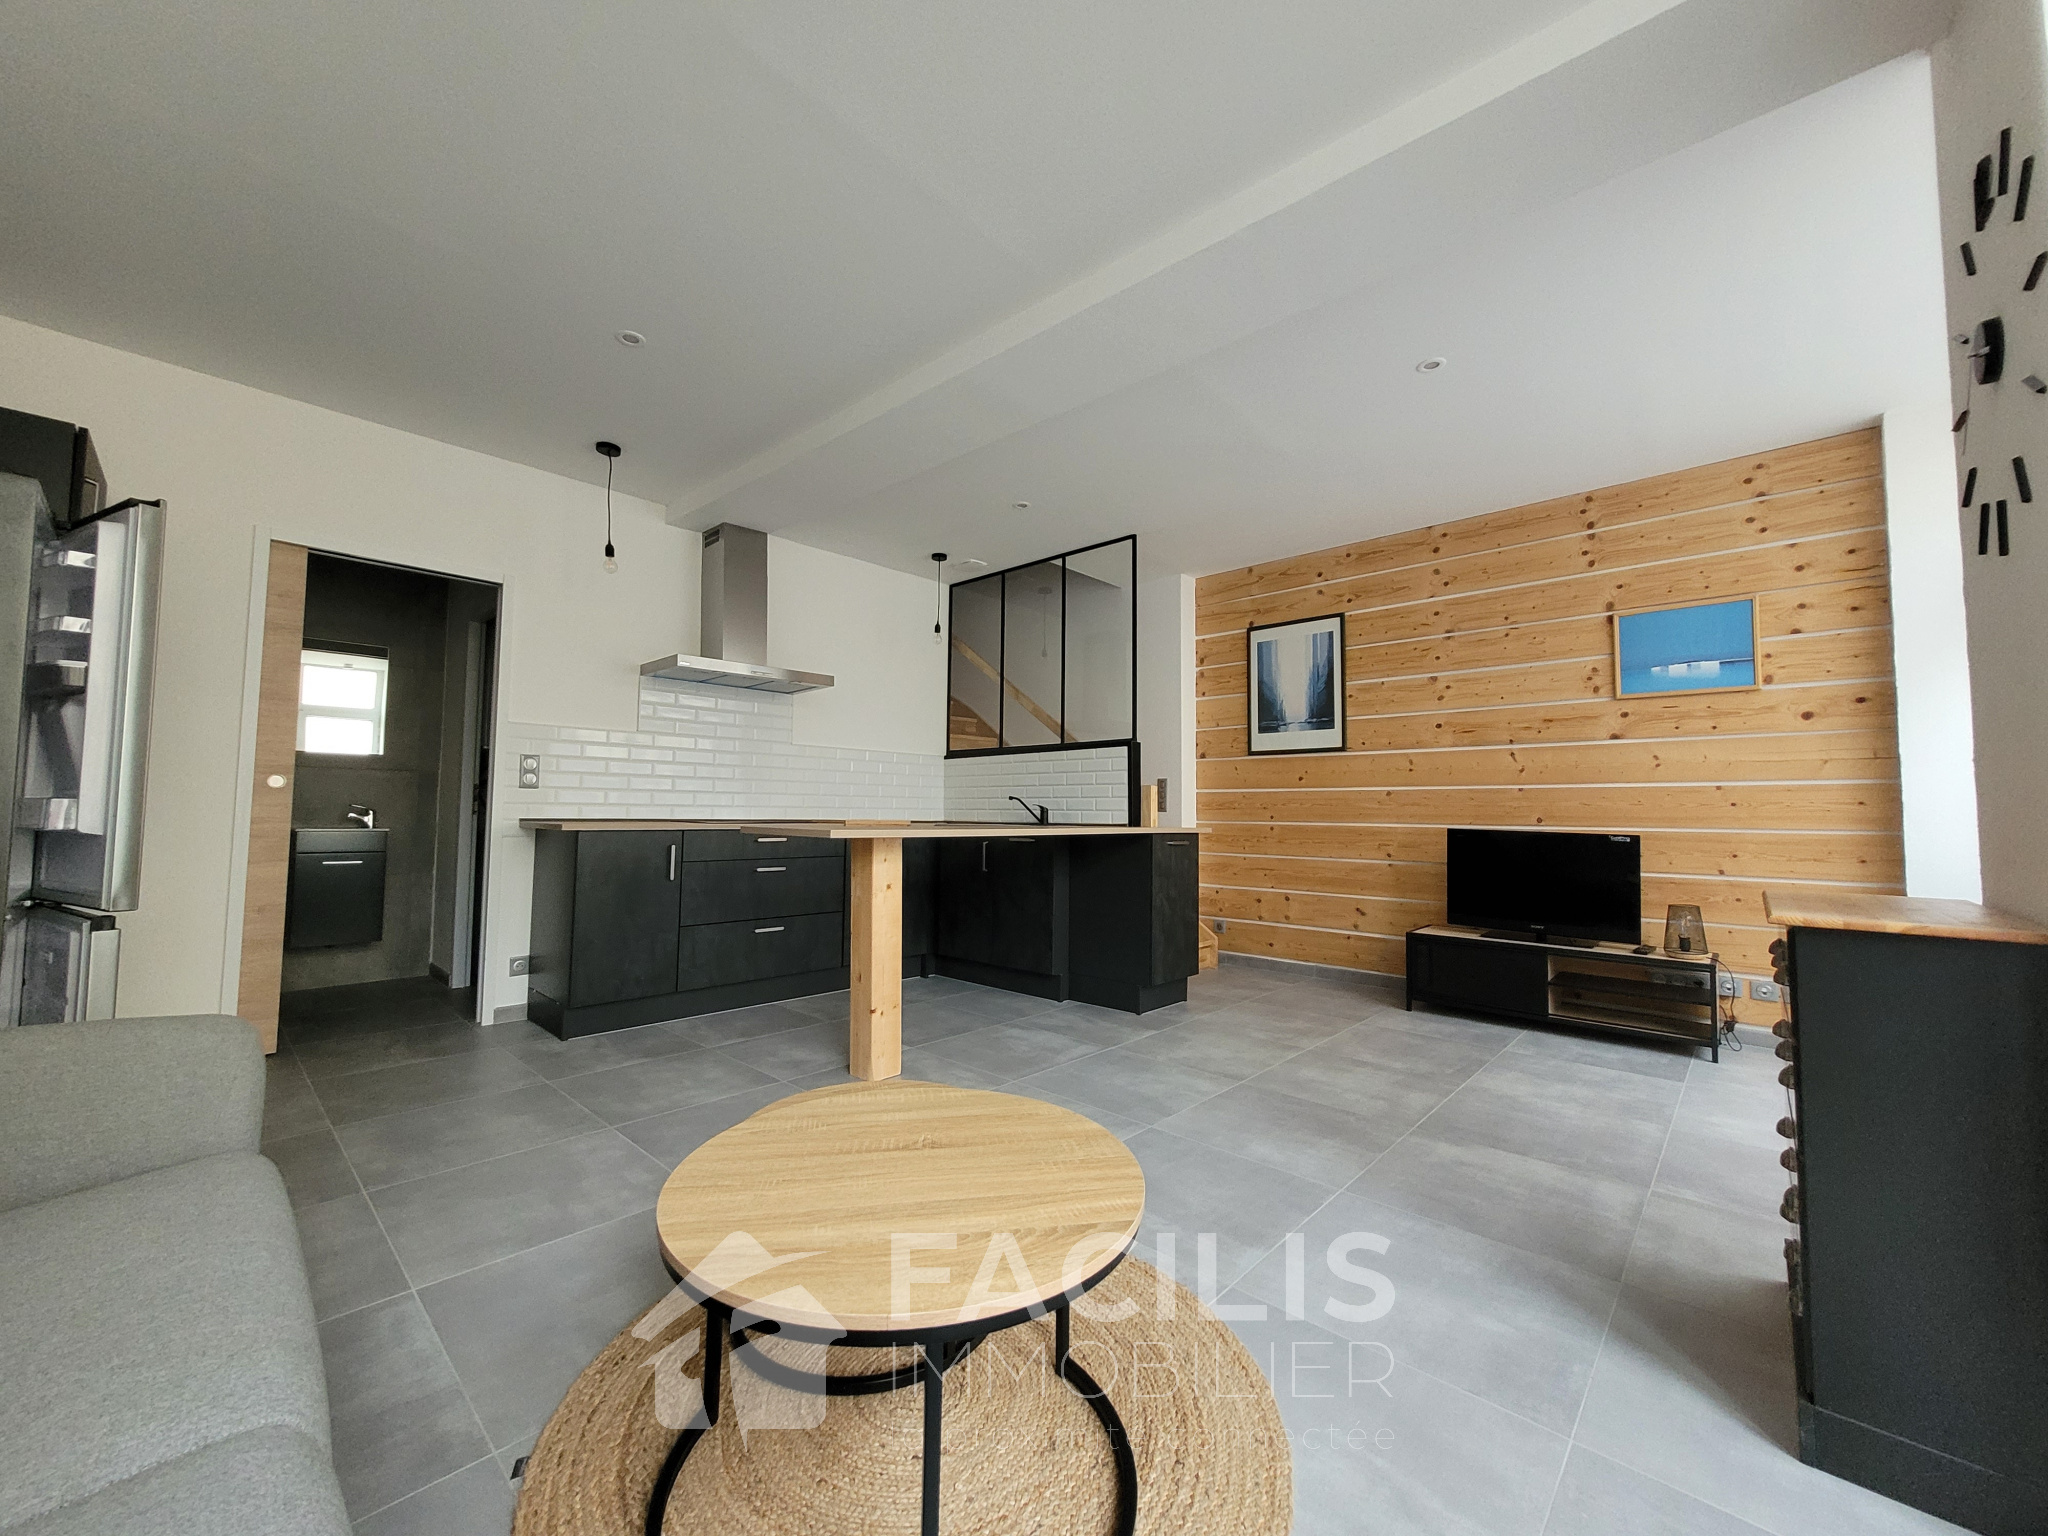 Vente Maison 200m² 9 Pièces à Maubourguet (65700) - Facilis Immobilier